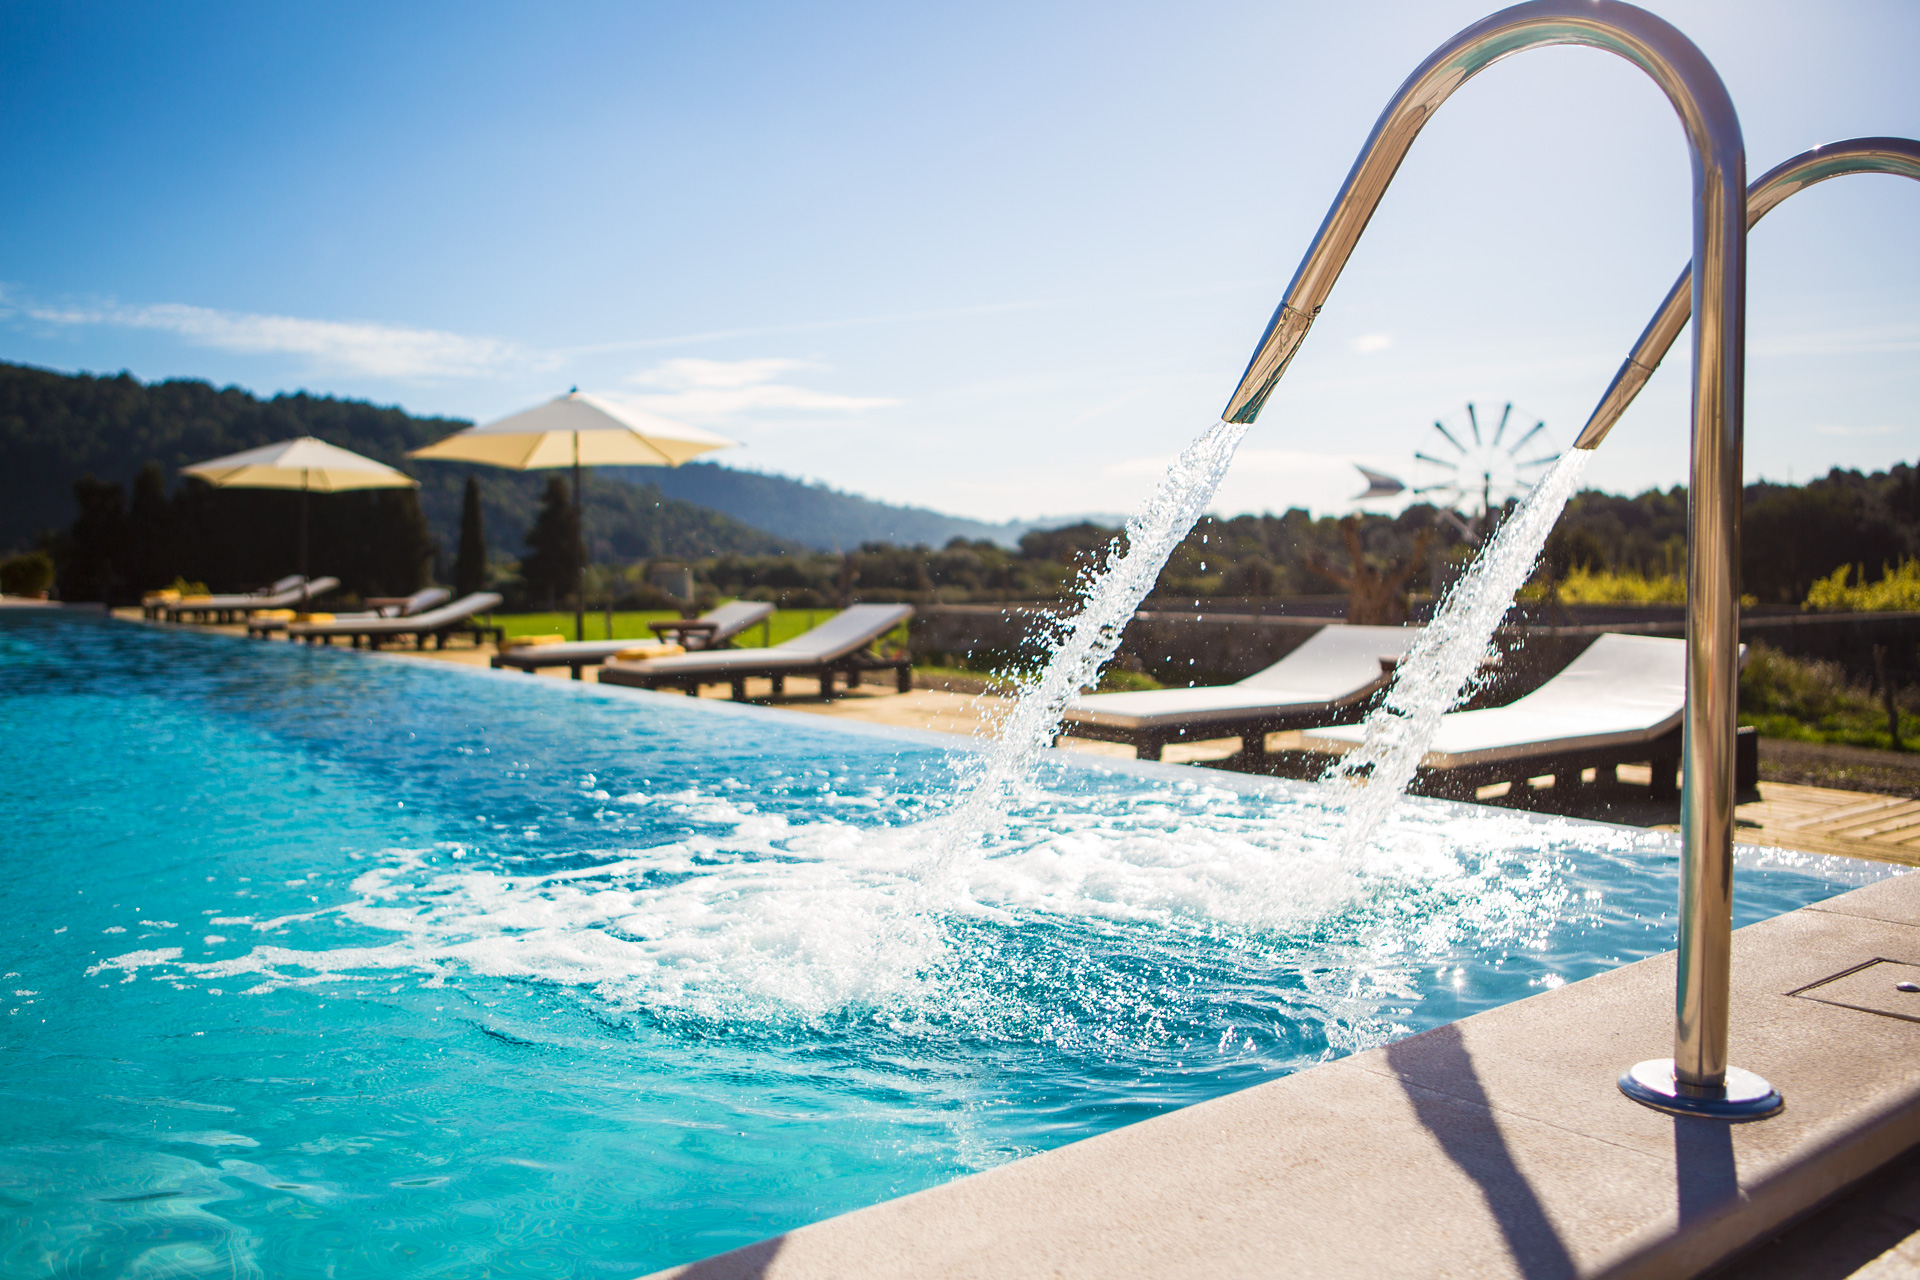 Weil nichts Ihre Reisepläne stören kann , erwarten wir Sie schon bald im Monnaber Nou. - monnaber nou pool 1 - Hotel Rural Monnaber Nou Mallorca